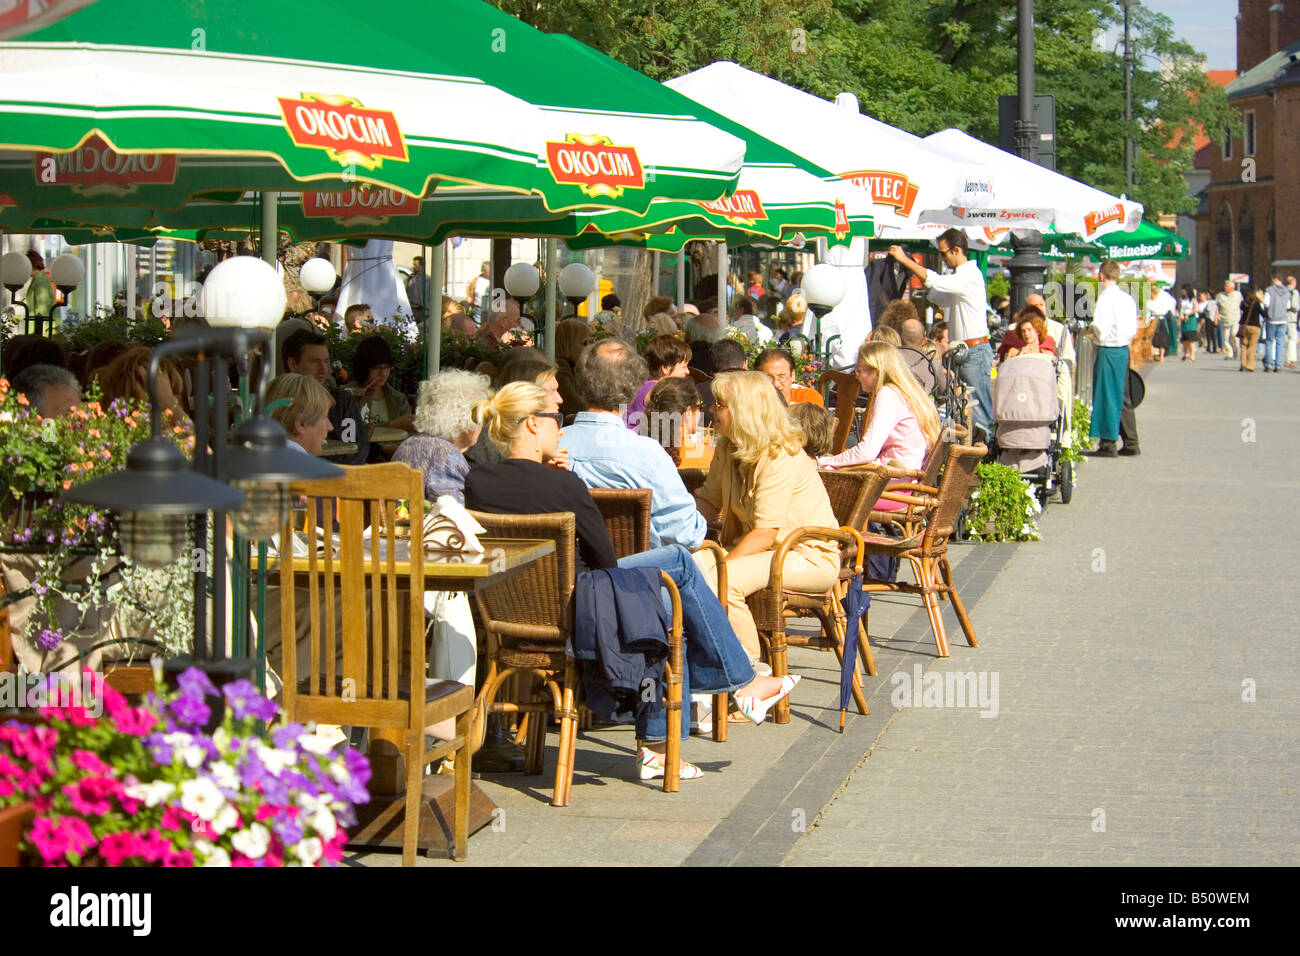 La Piazza del Mercato di Cracovia in Polonia che mostra la cultura dei caffè. Foto Stock